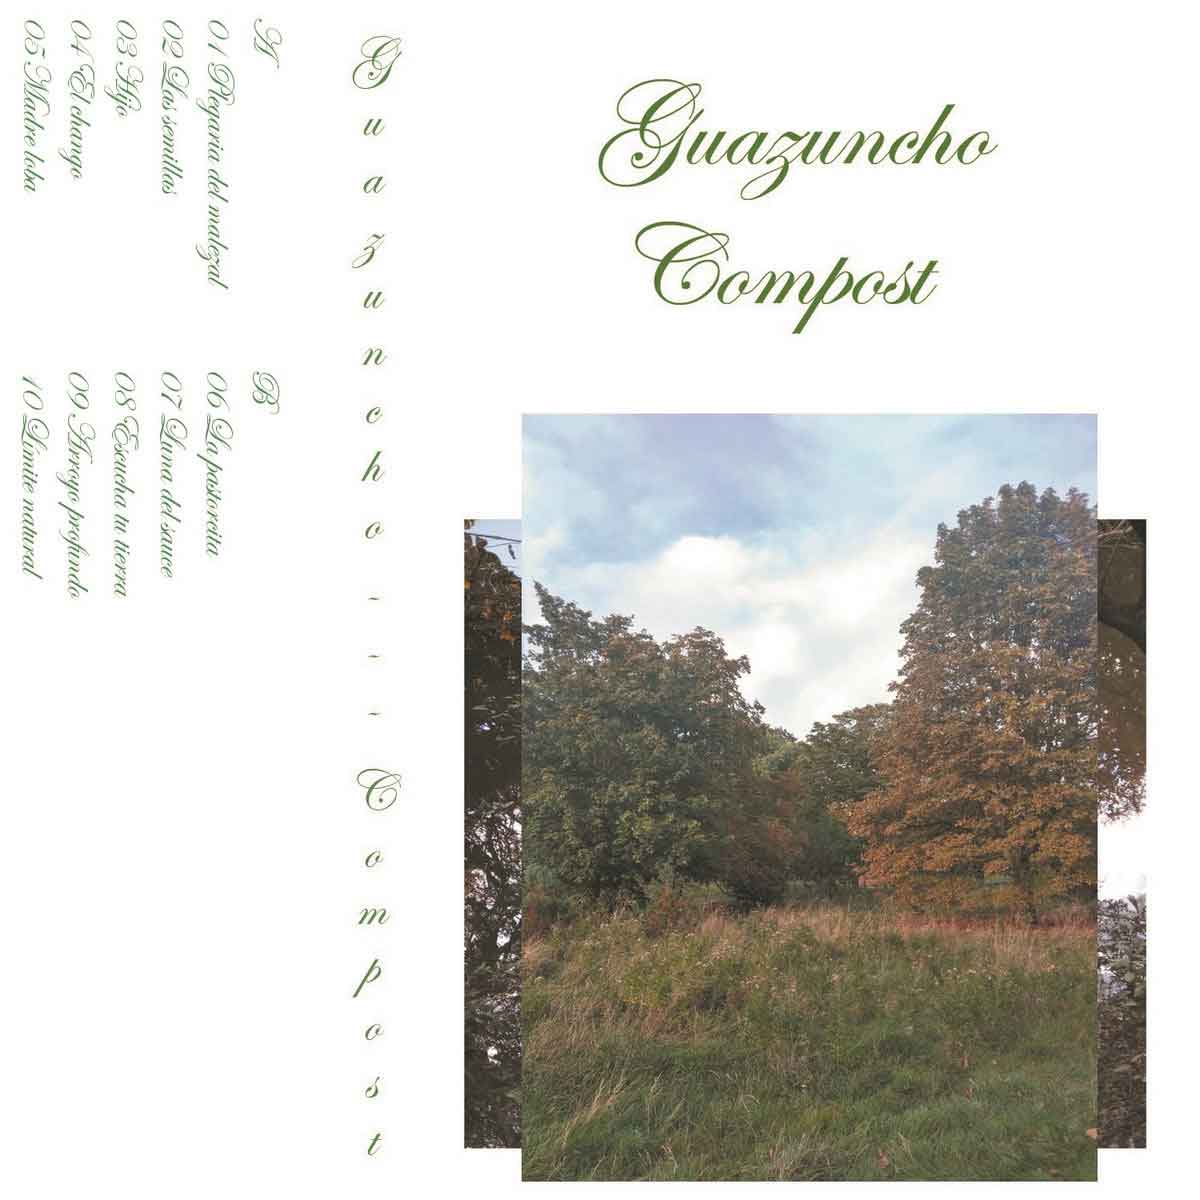 Tapa de "Compost", disco de Guazuncho